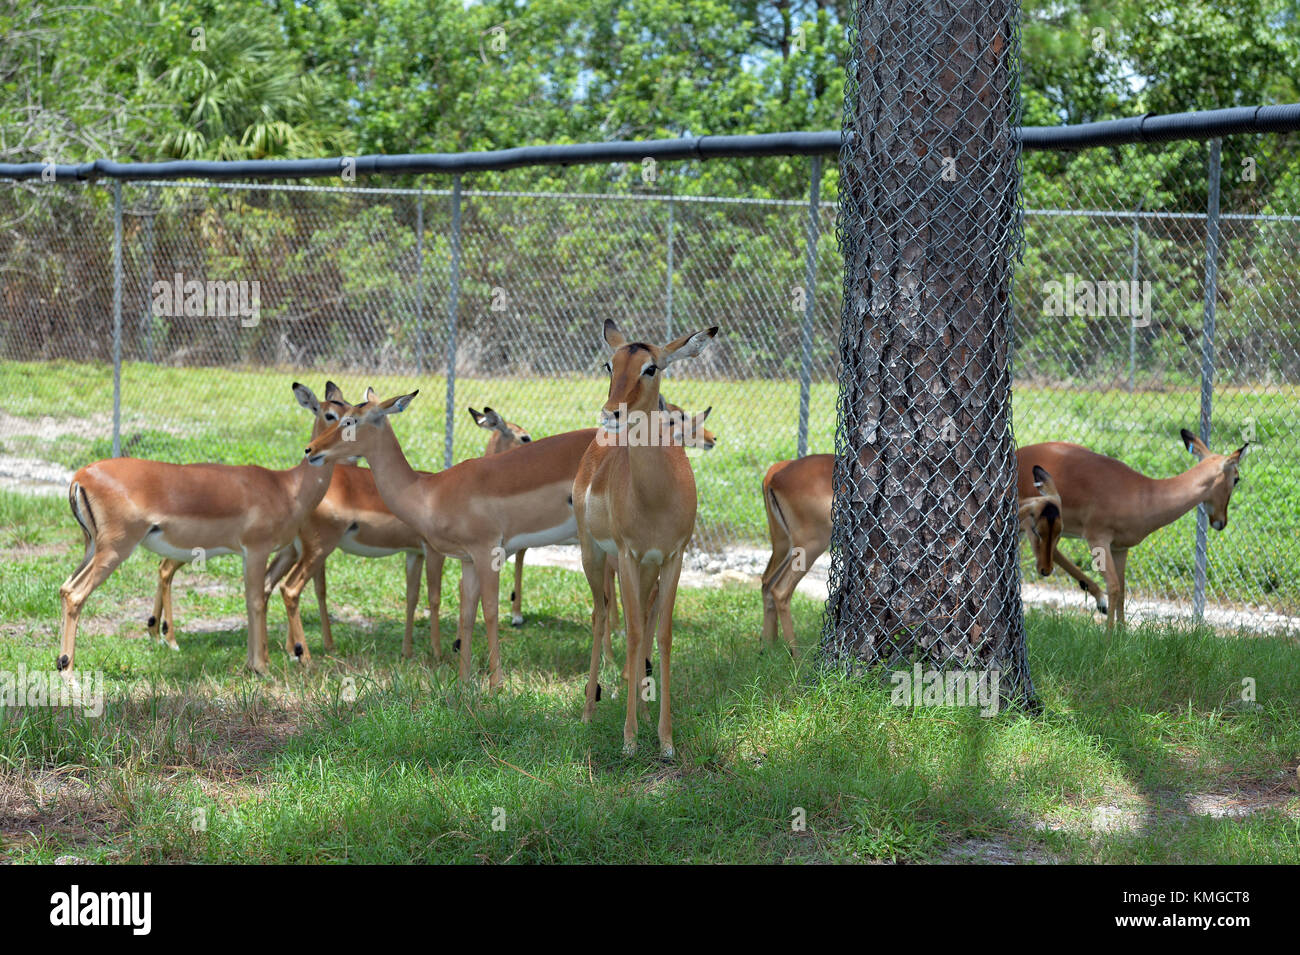 Loxahatchee, FL - 17 AOÛT : animaux au Lion Country Safari le 17 août 2015 à Loxahatchee, en Floride. Personnes: Animaux référence de transmission: FLXX Hoo-Me.com / MediaPunch Banque D'Images